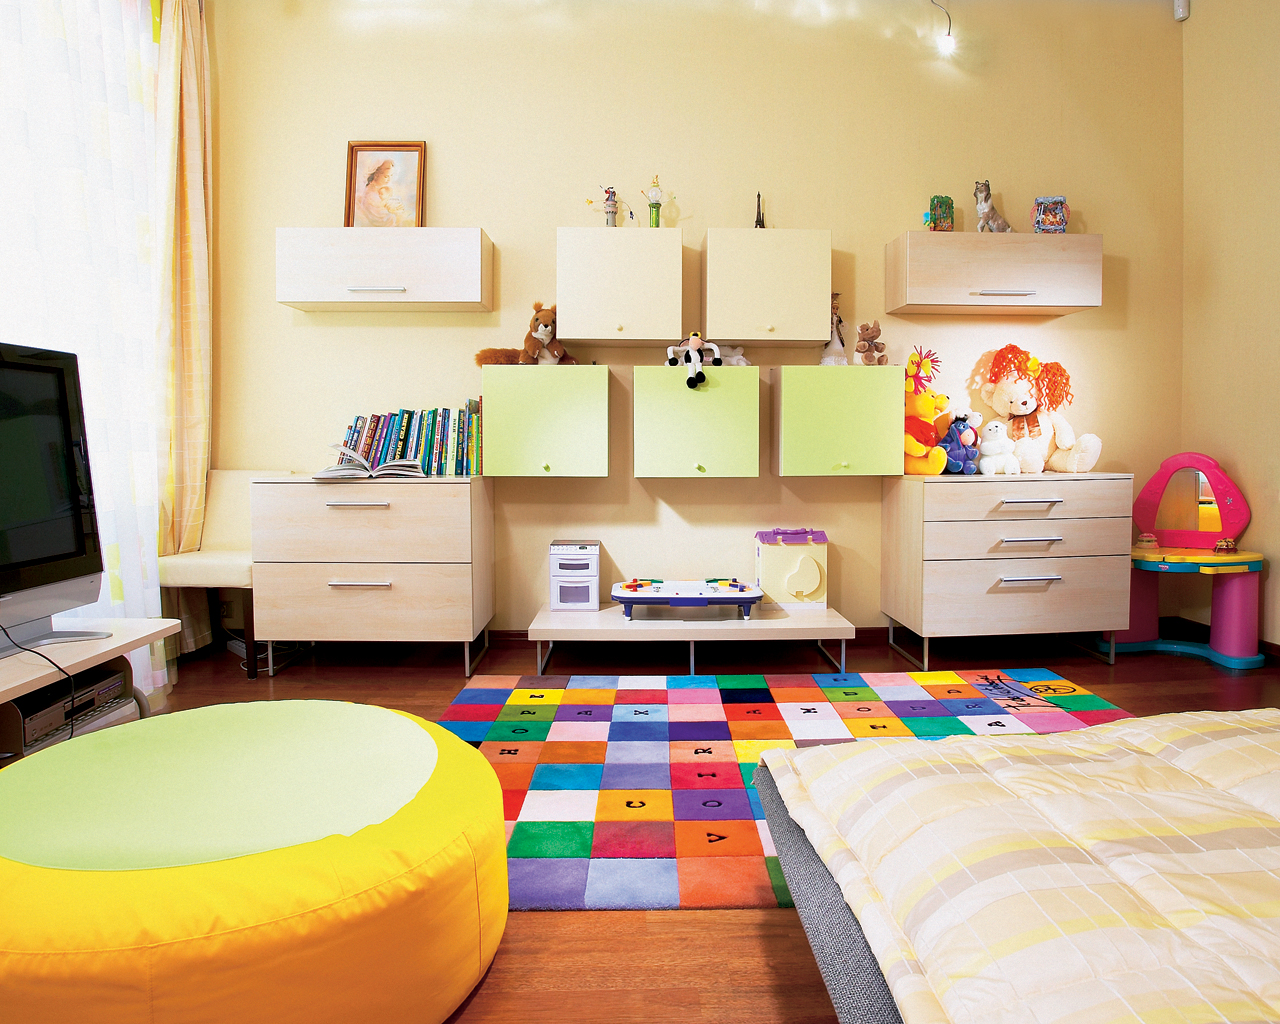 Ideje za dekoriranje dječjih tepiha